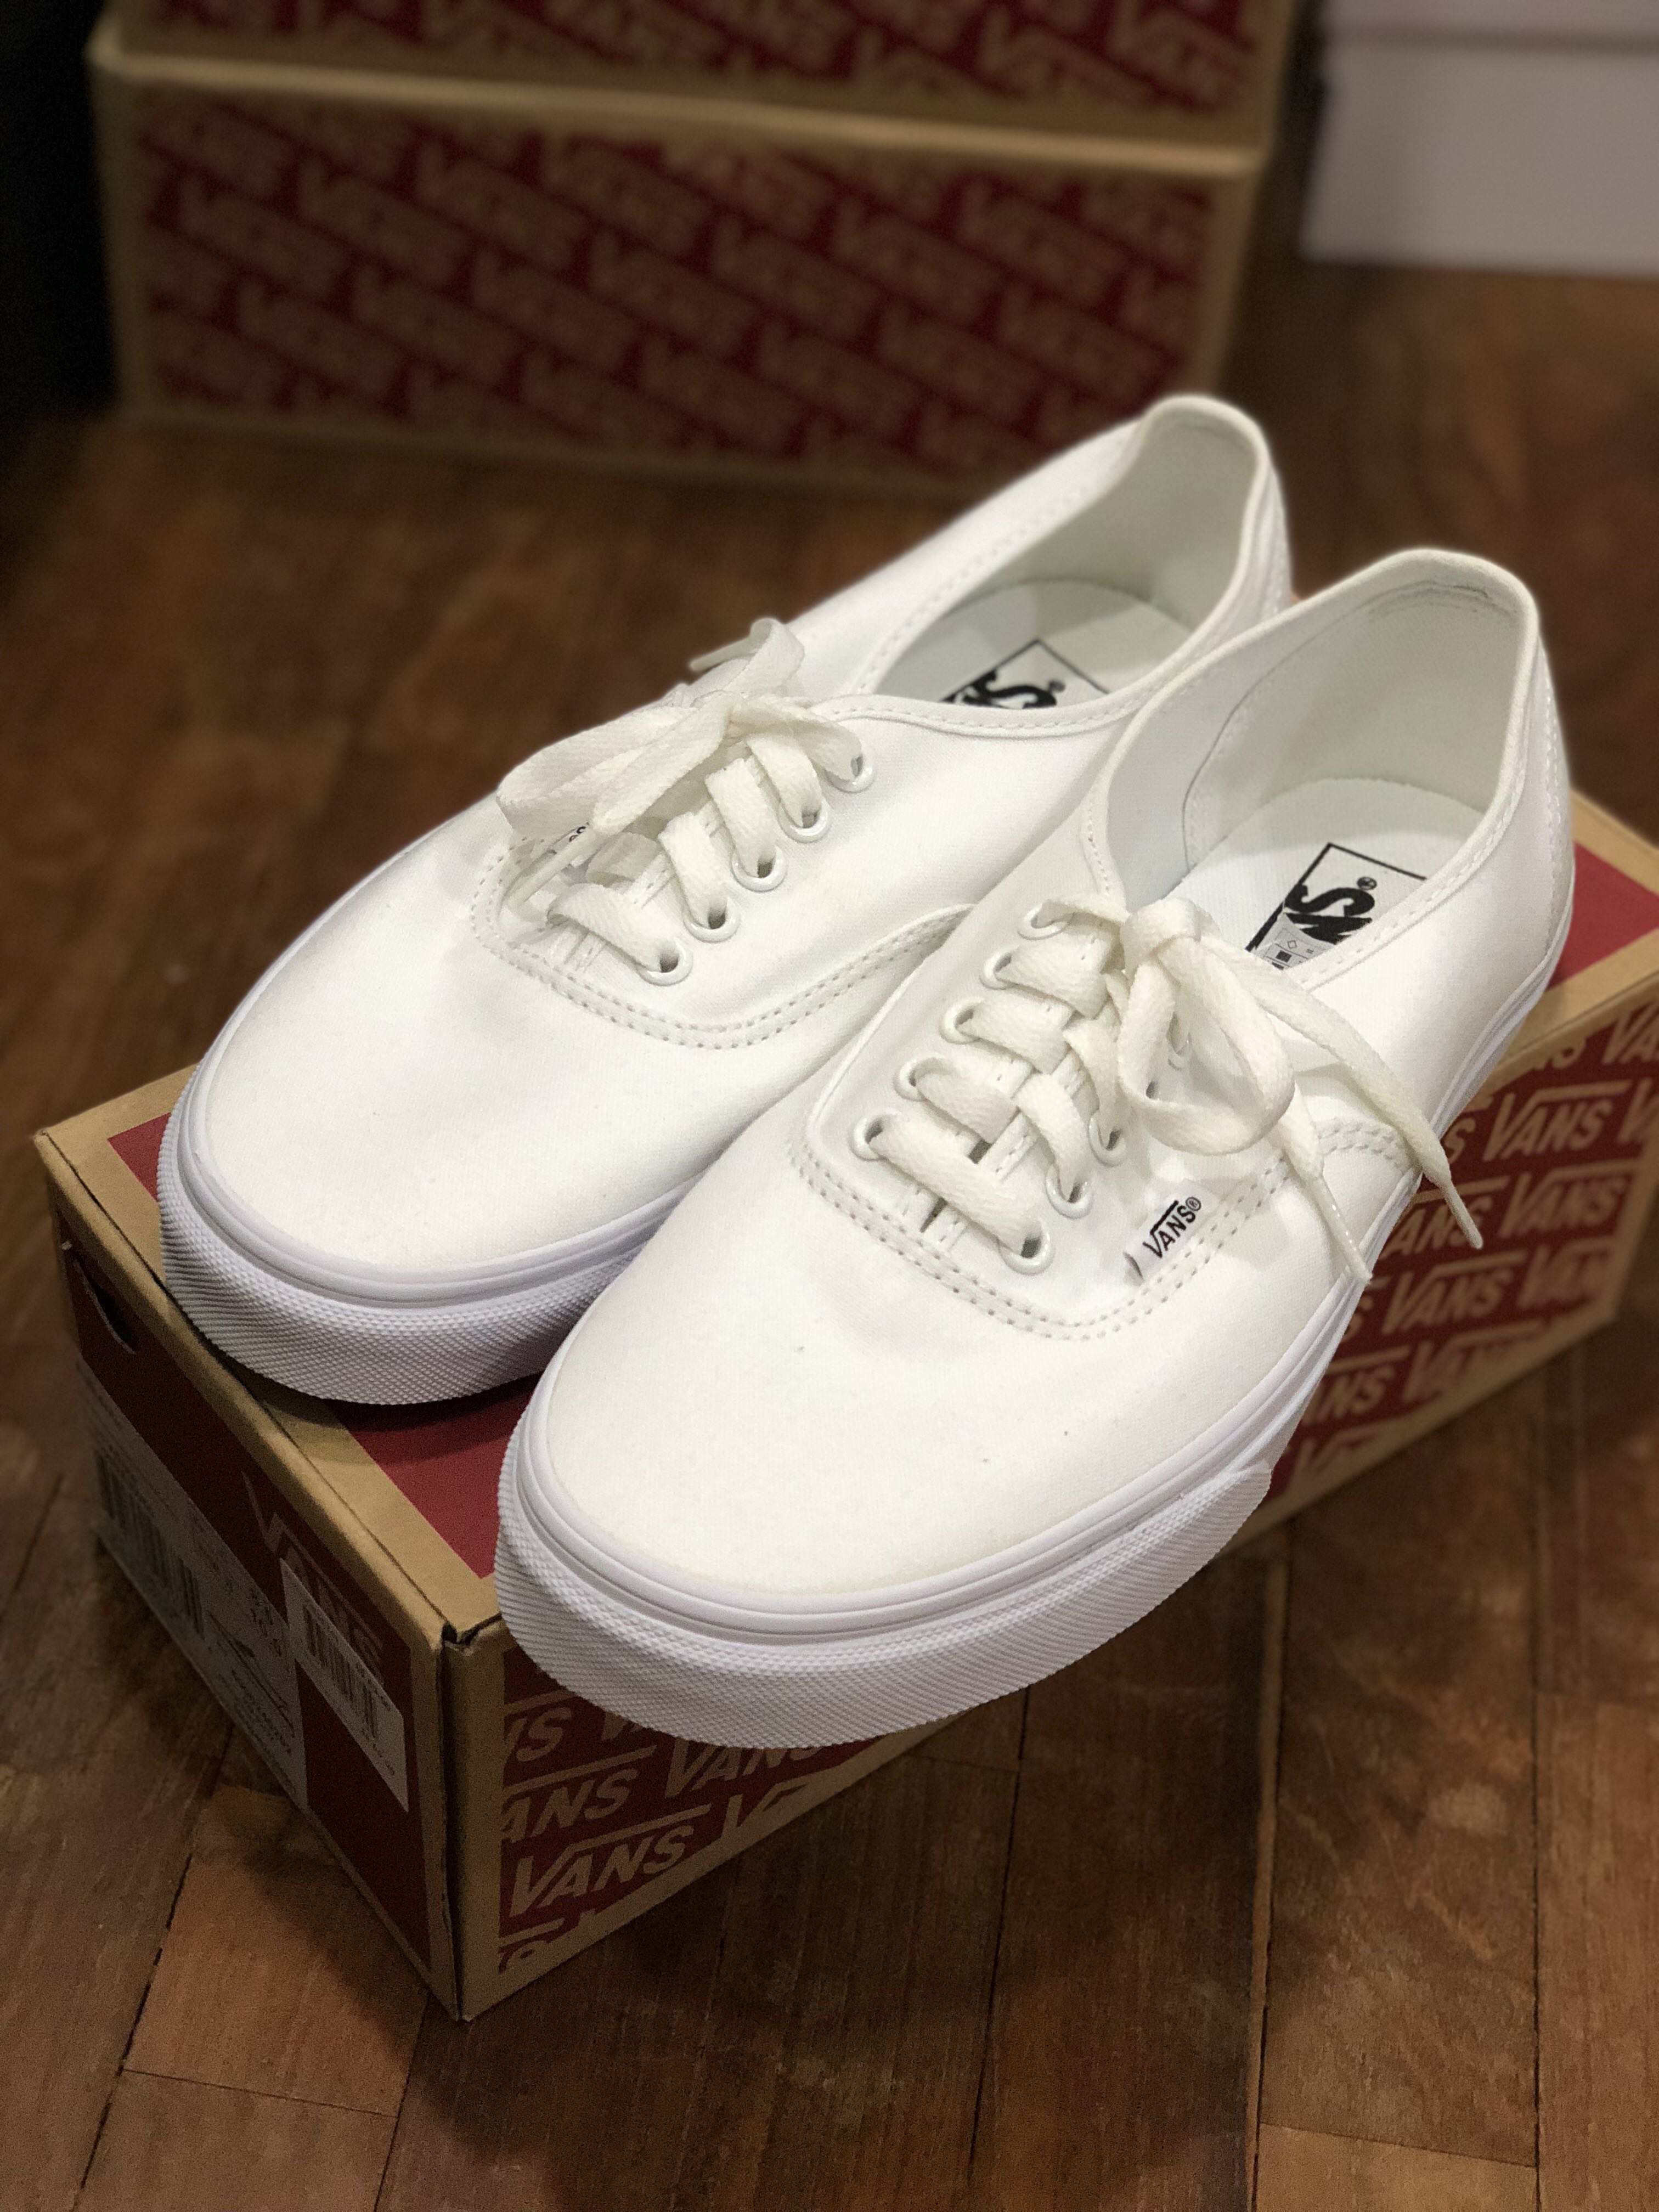 Brand New] Vans True White, Men's Footwear, Sneakers on Carousell